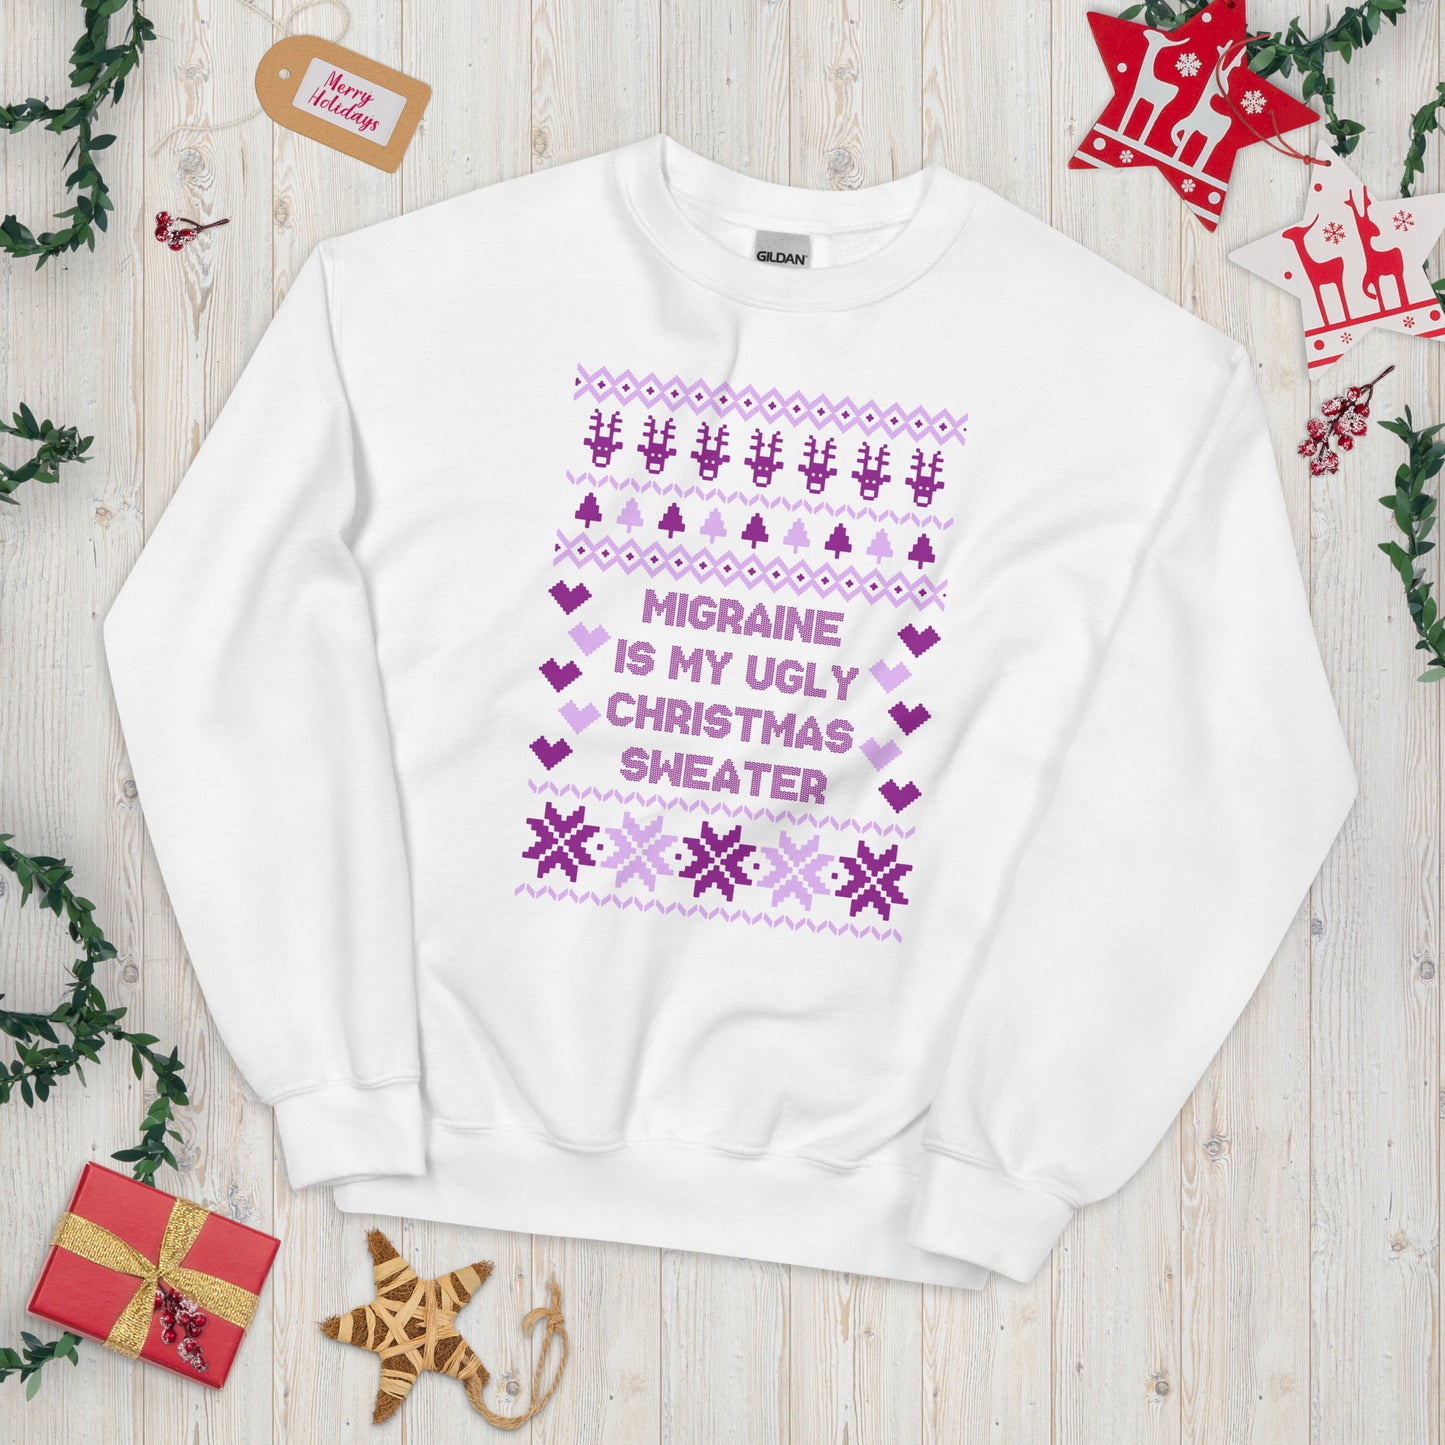 Migraine is My Ugly Christmas Sweater Sweatshirt